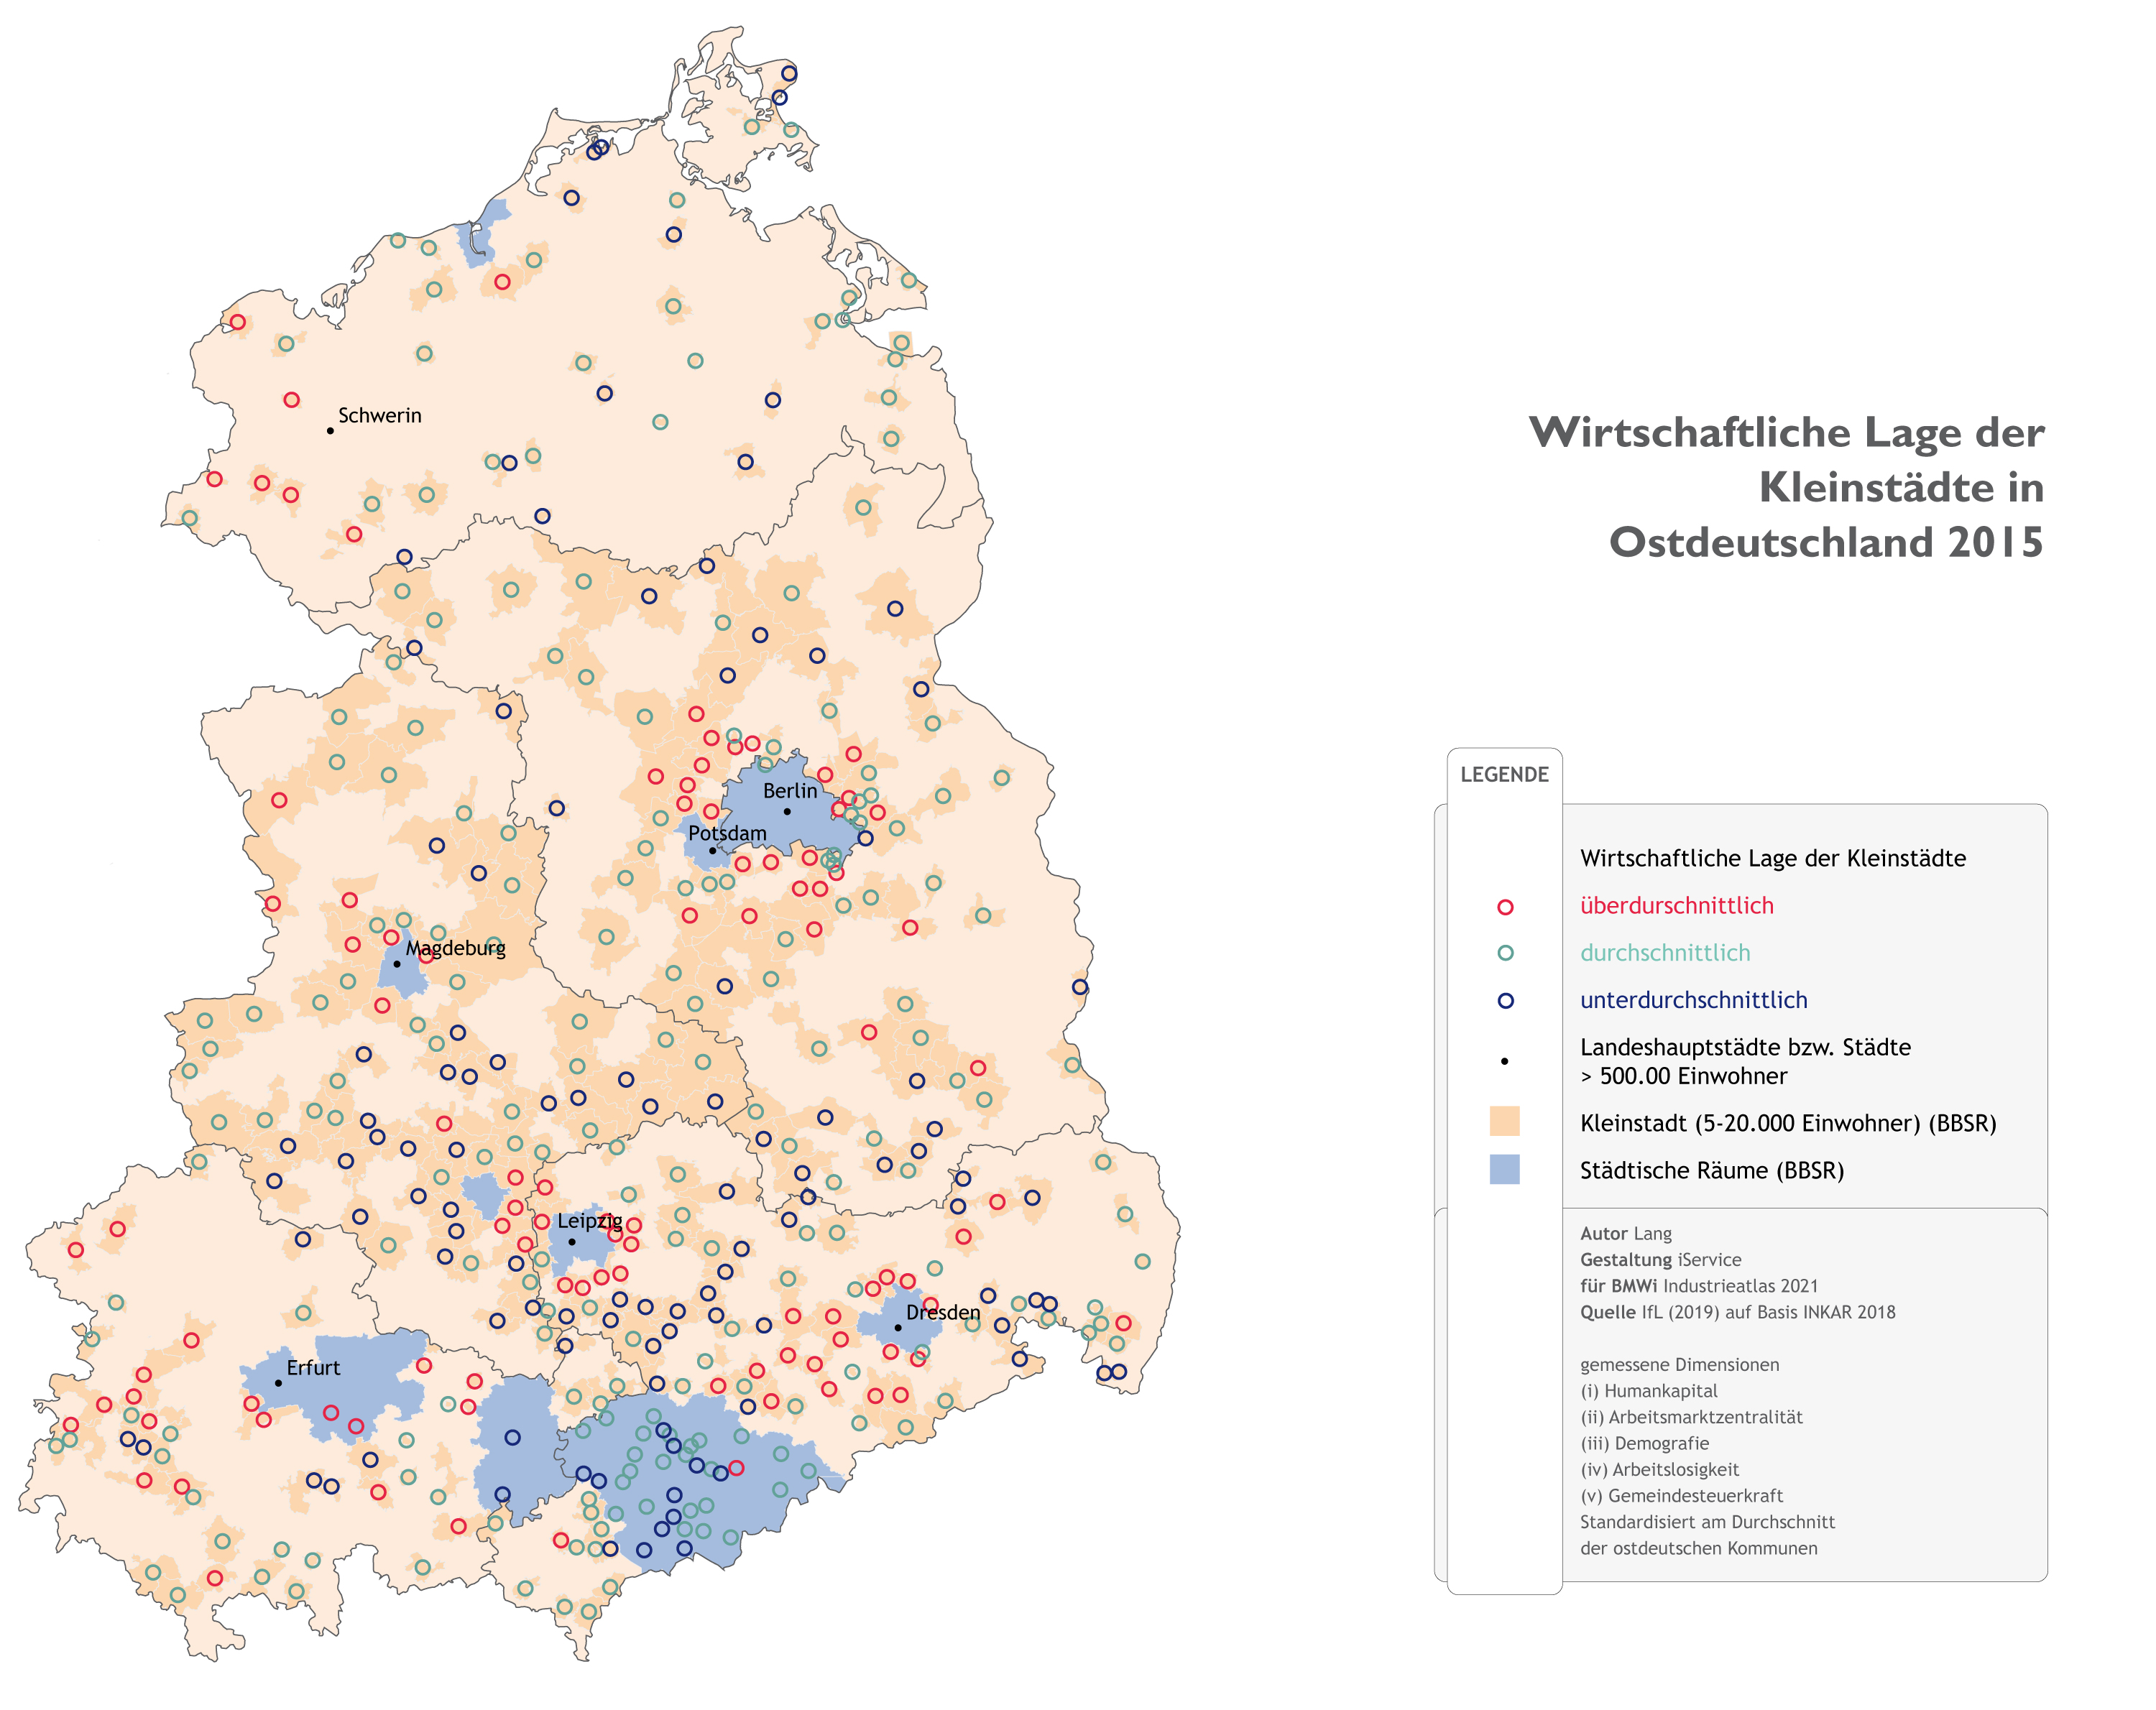 Wirtschaftliche Lage der Kleinstädte in Ostdeutschland 2015